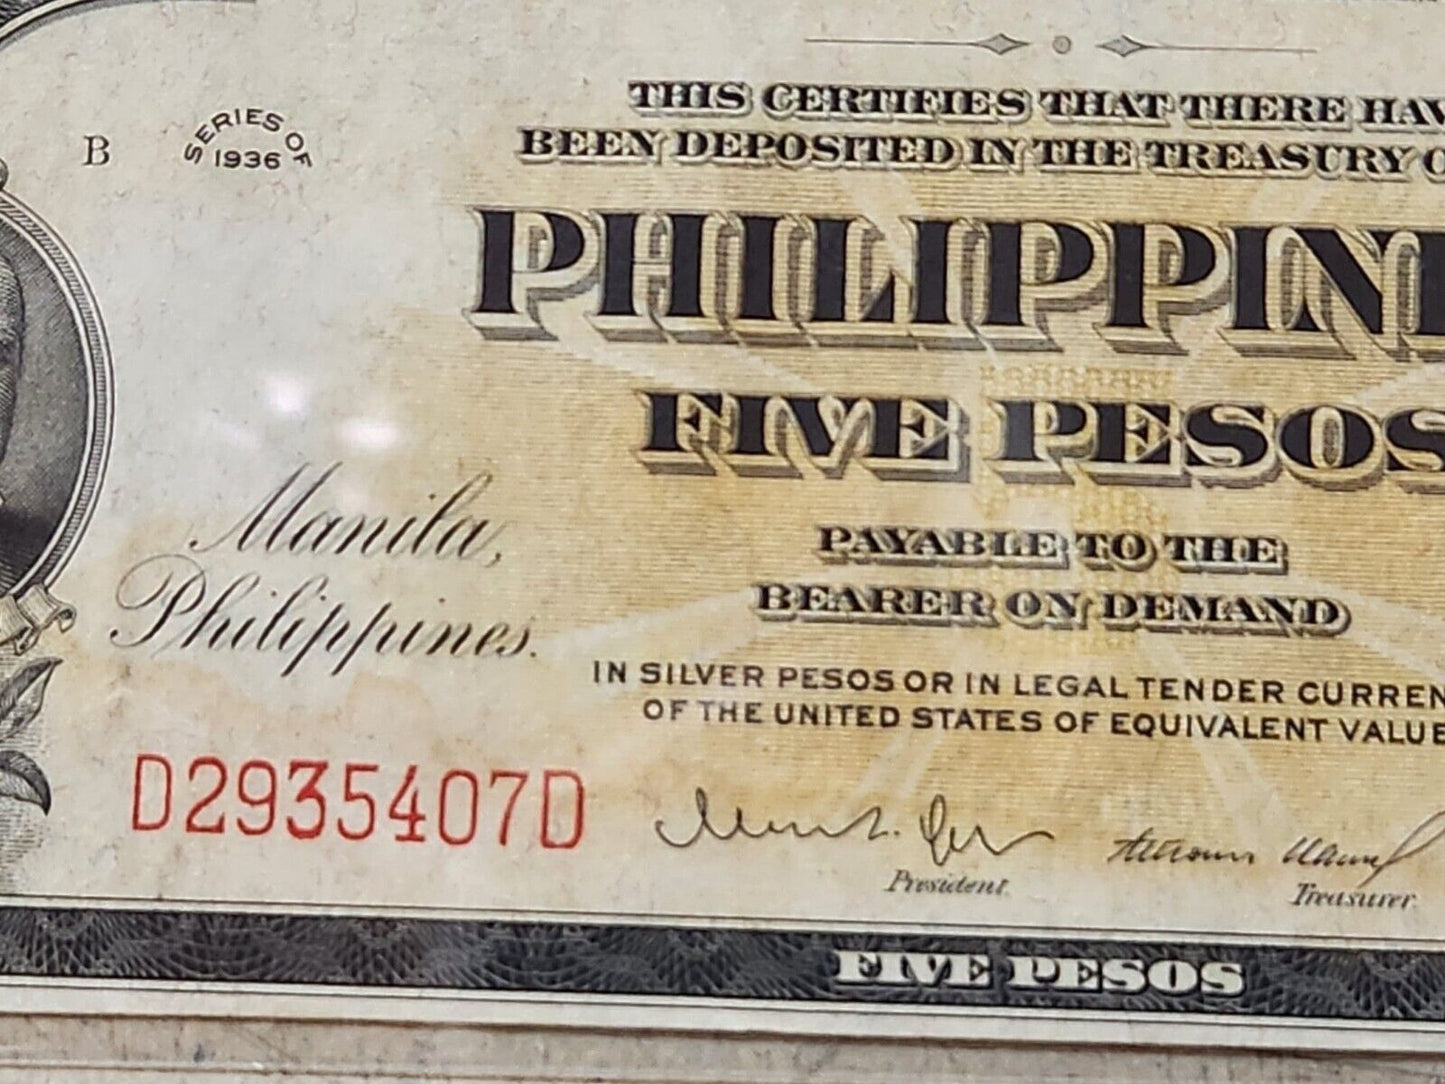 Philippines 5 Pesos 1936 P-83a UNC .EK104